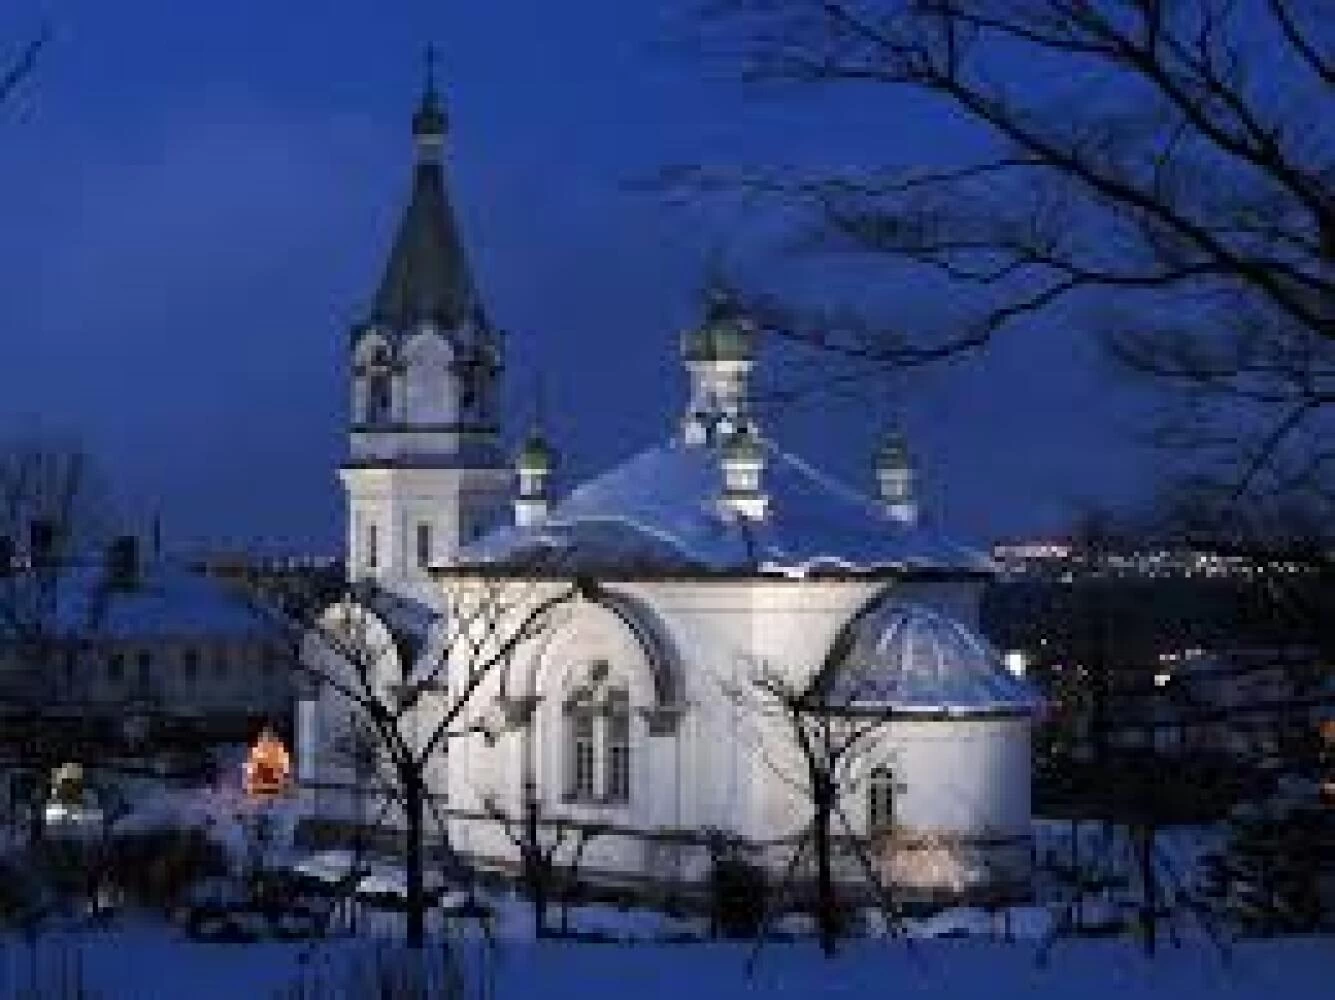 19世紀半ば頃のロシア正教会、ライトアップもぜひ！